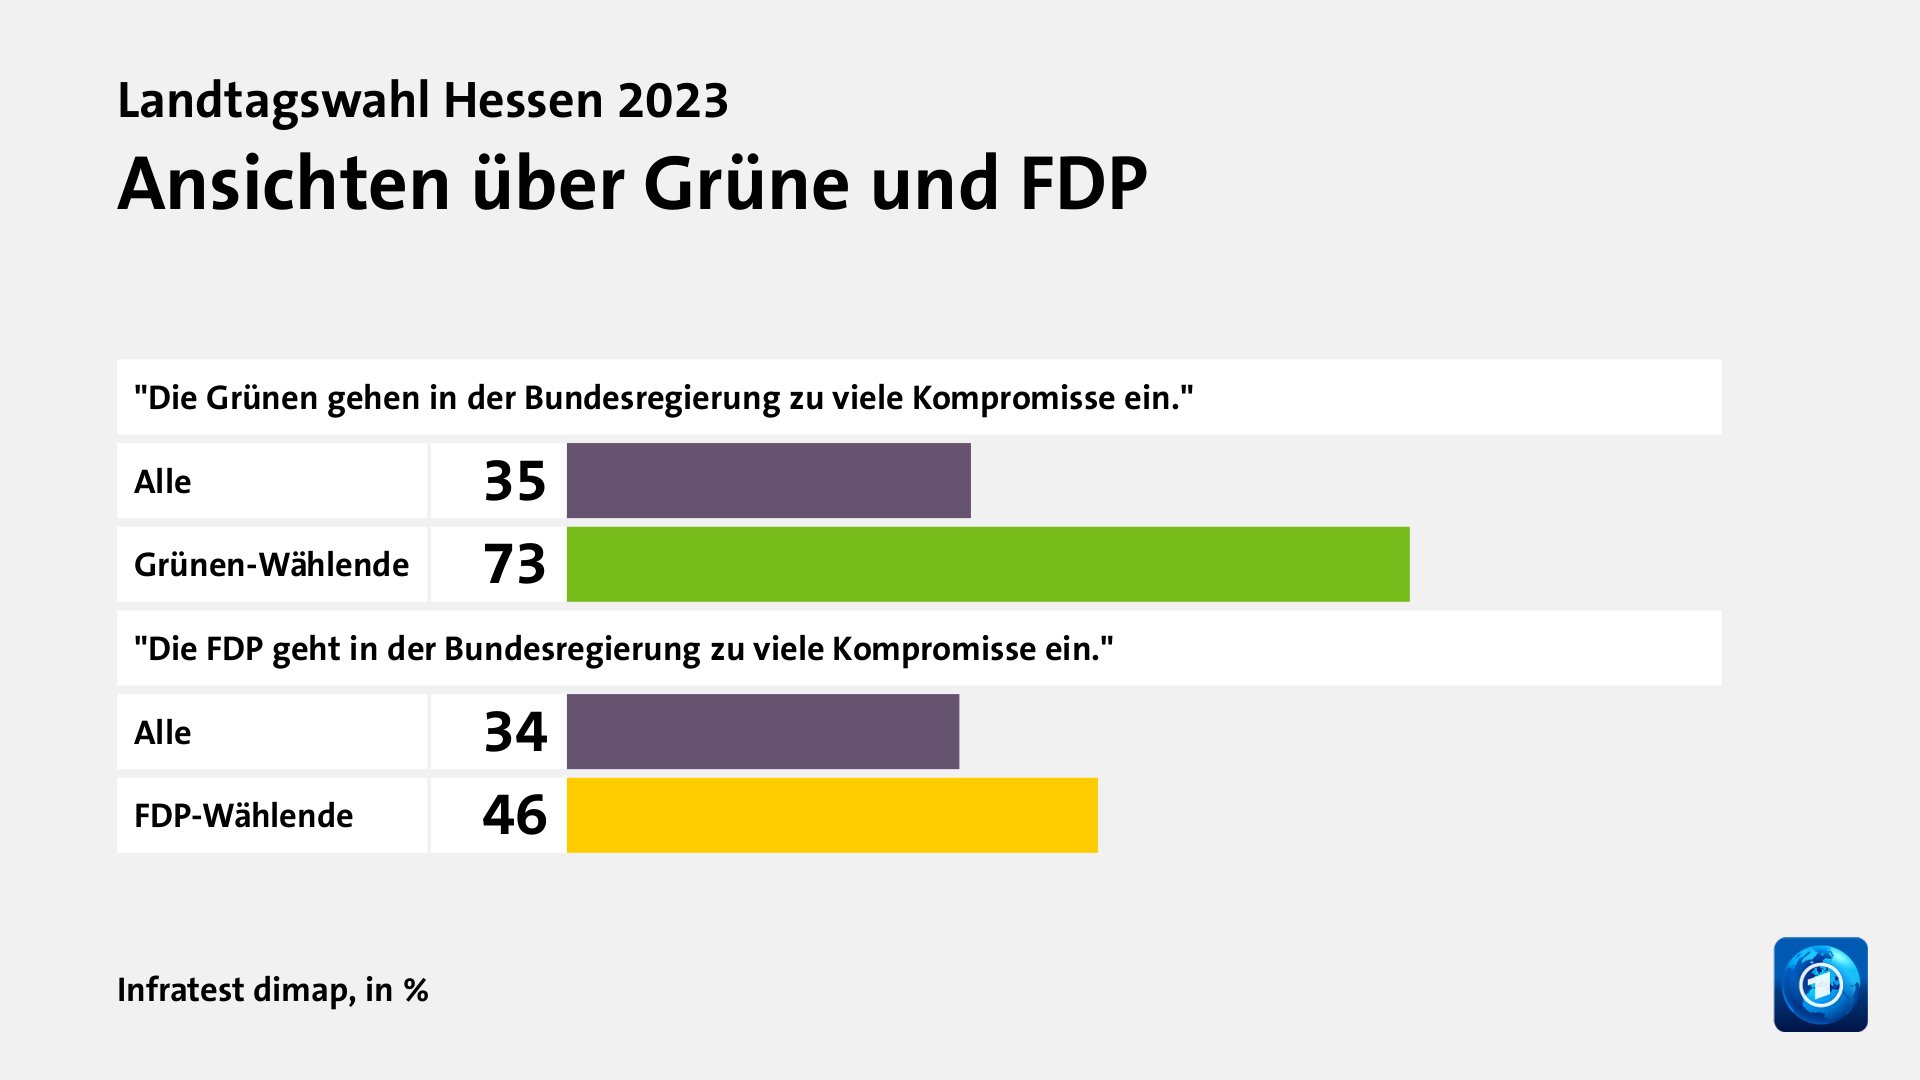 Ansichten über Grüne und FDP, in %: Alle 35, Grünen-Wählende 73, Alle 34, FDP-Wählende 46, Quelle: Infratest dimap